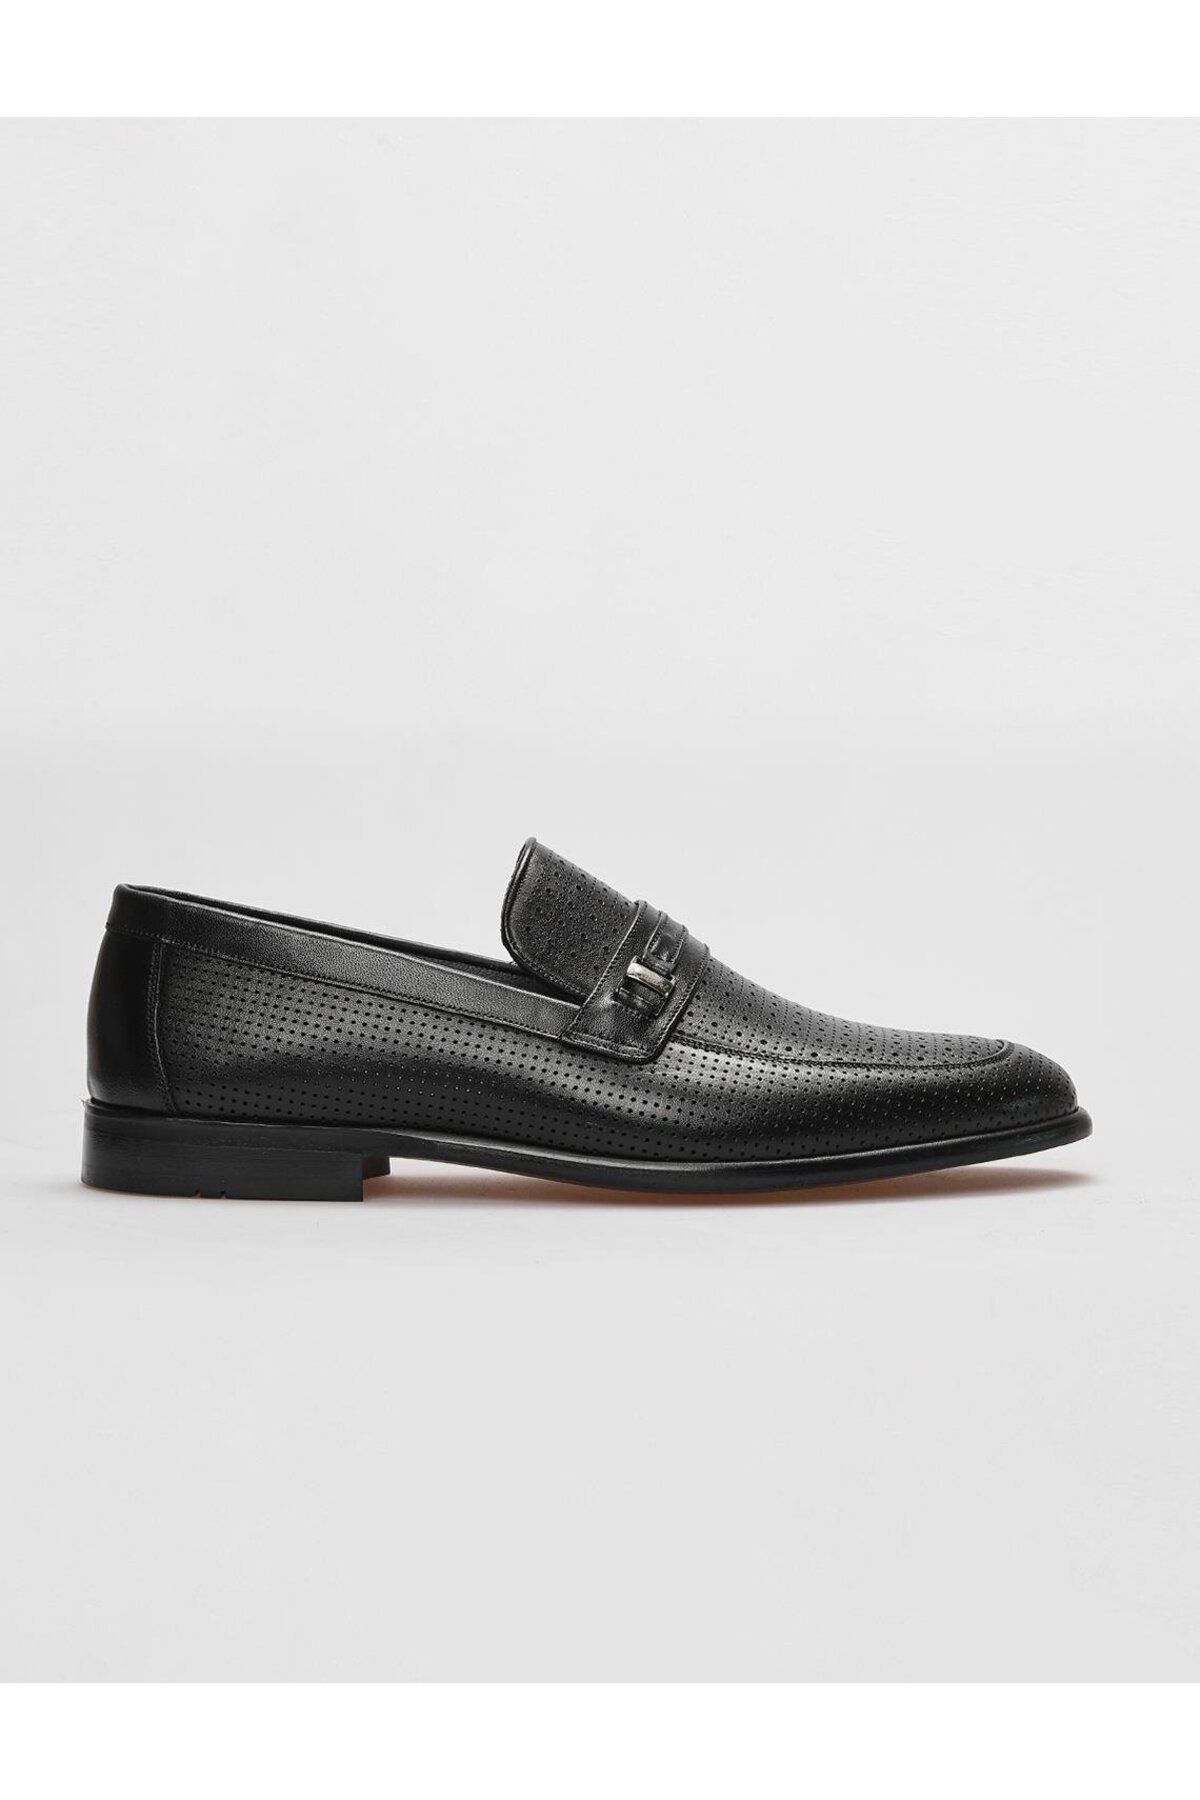 Cabani Hakiki Deri Siyah Toka Detaylı Erkek Klasik Ayakkabı